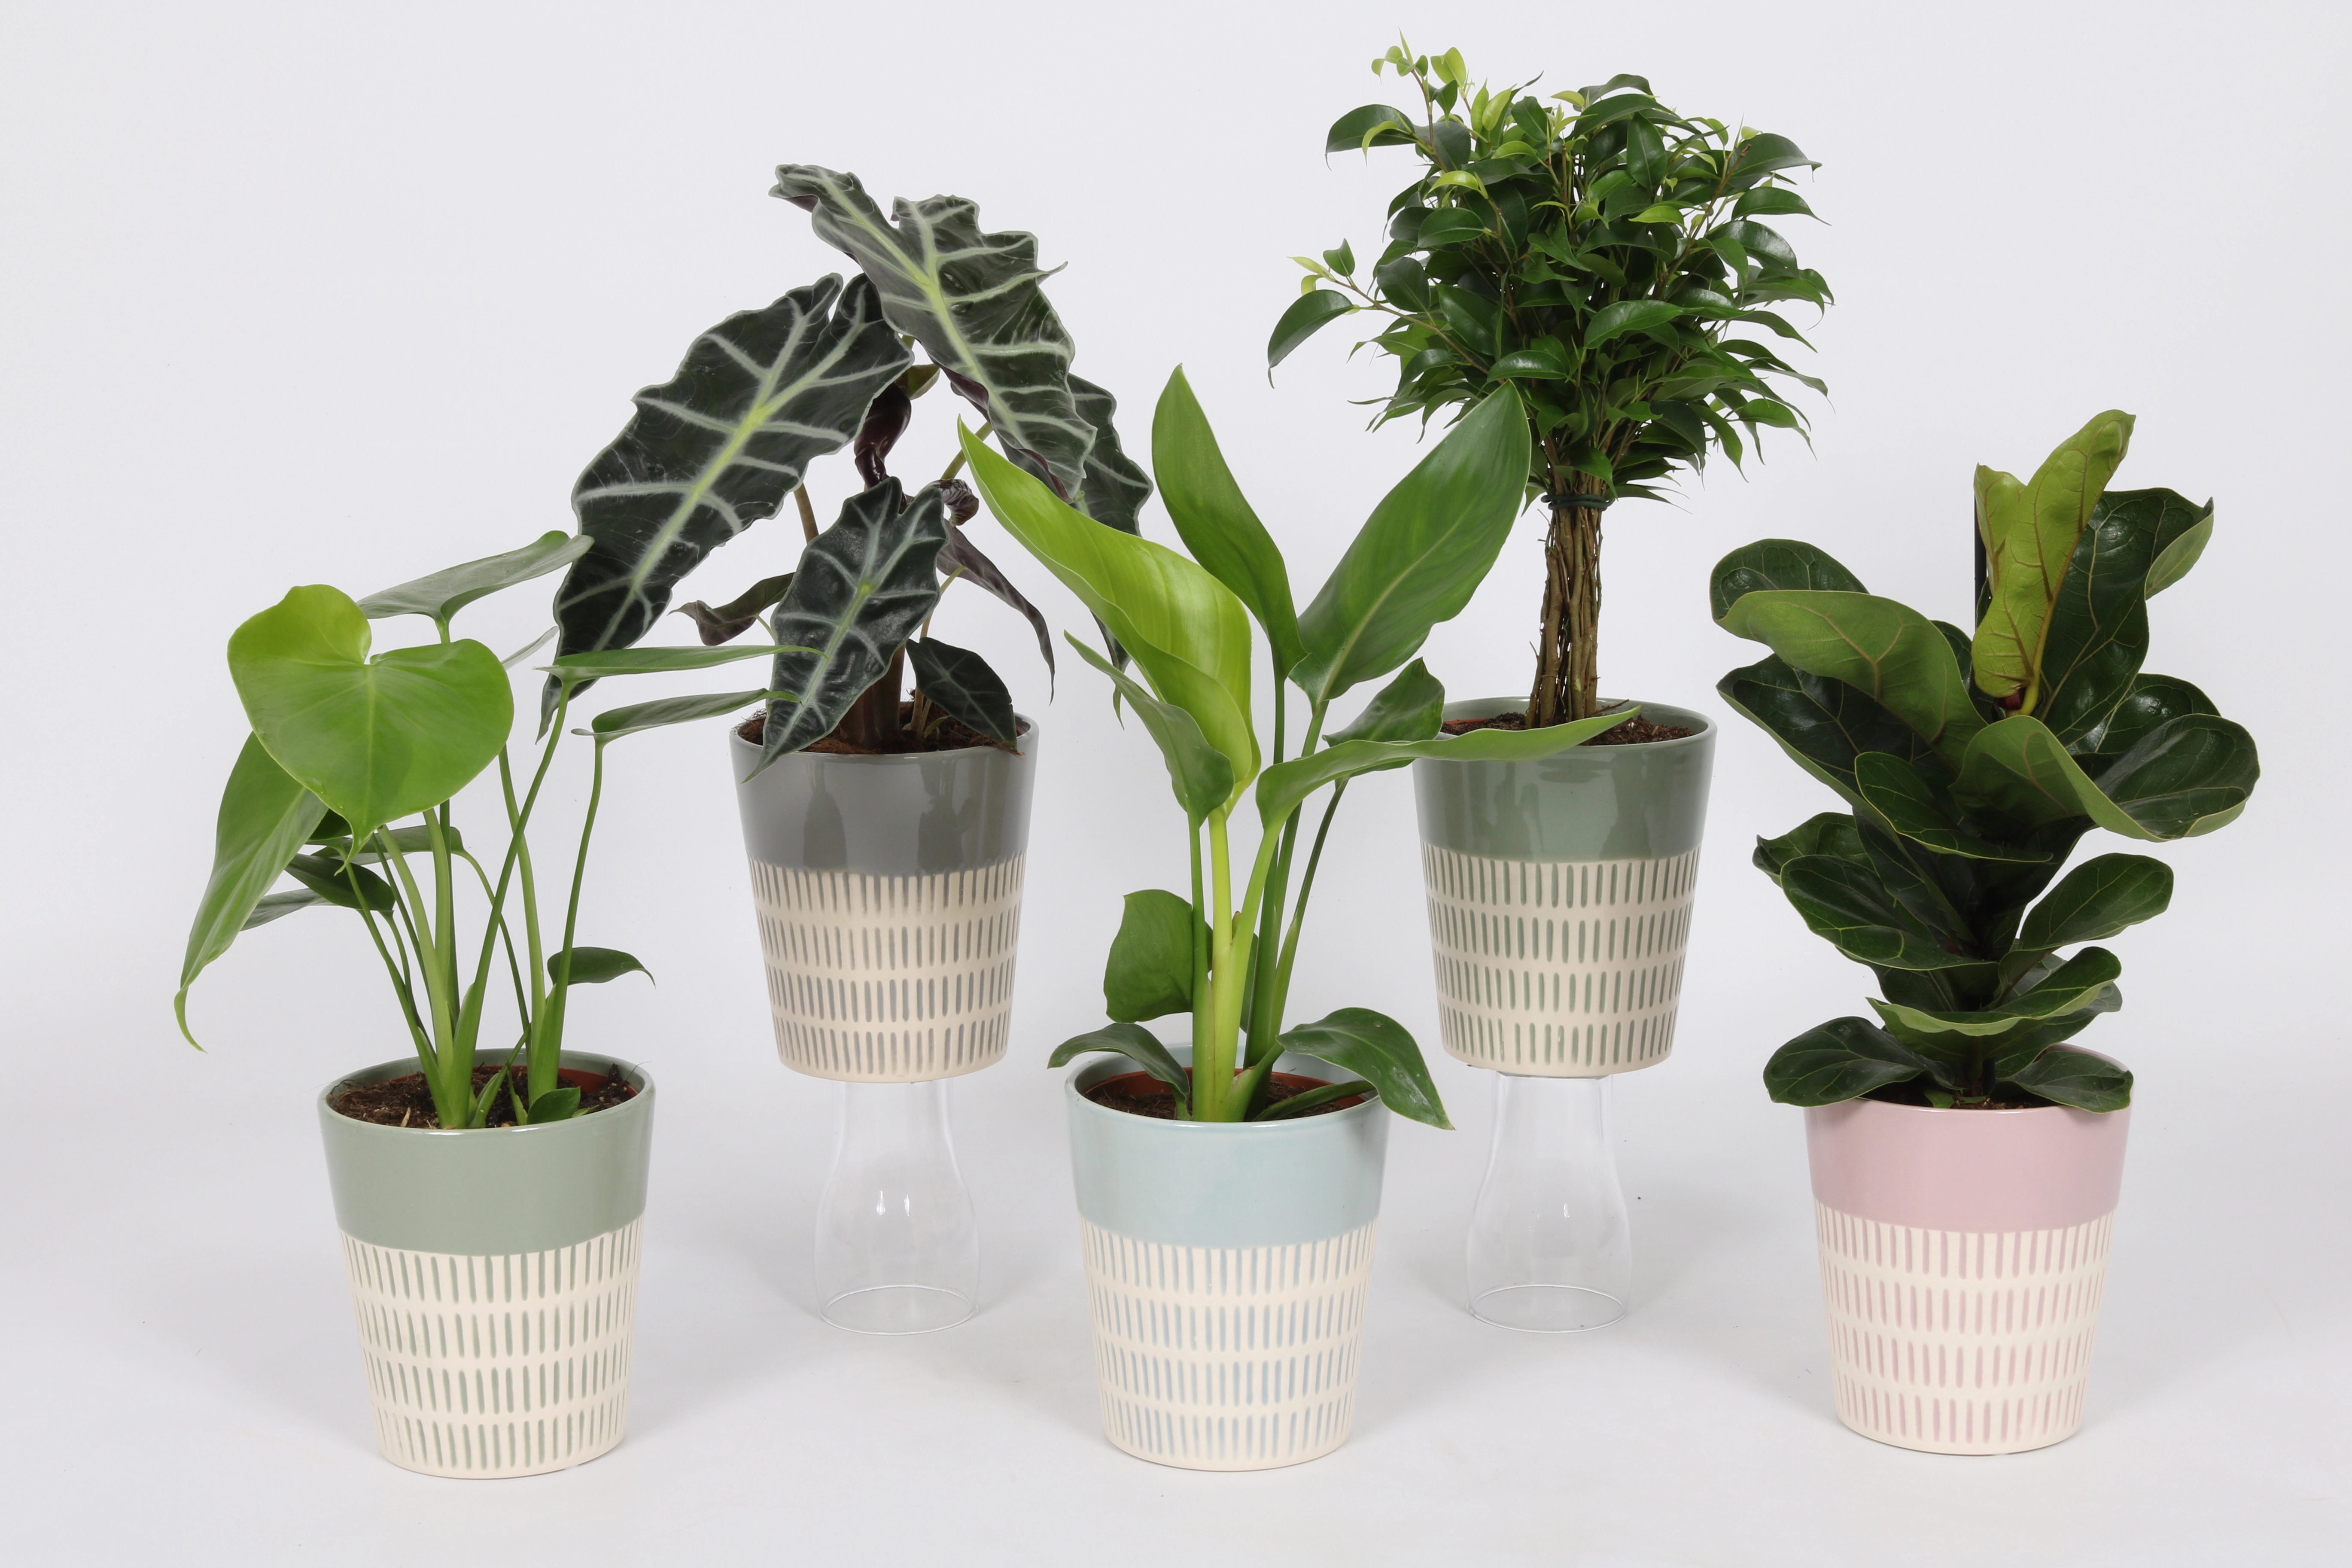 ca. OBI Topf-Ø cm 12 Grünpflanze kaufen sortiert bei im Keramik-Gefäß